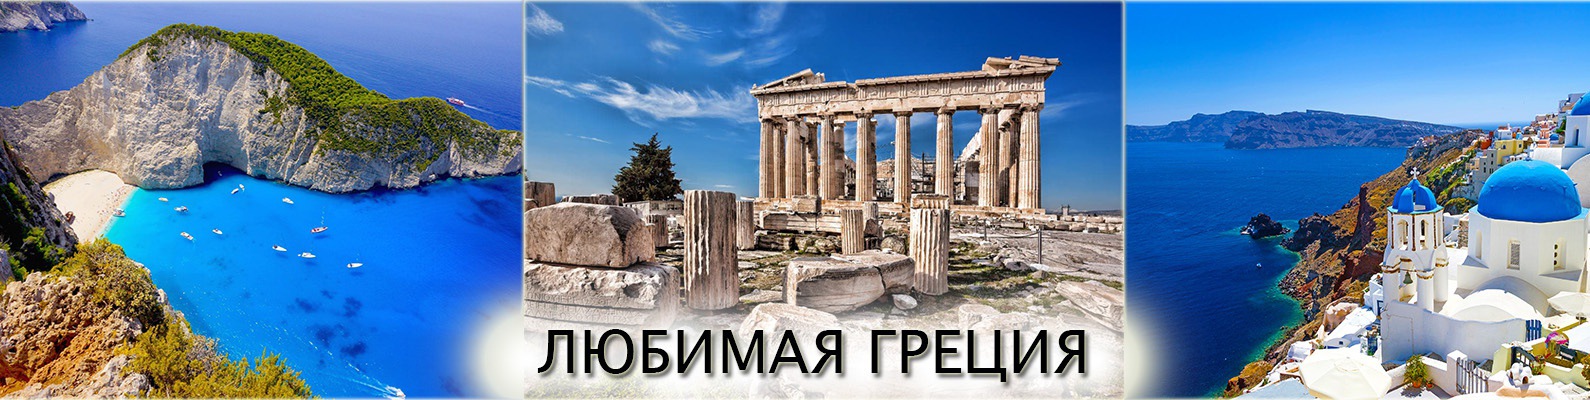 Греческая реклама. Арголида в древней Греции. Греция надпись. Реклама путешествия в Грецию. Любимая Греция.